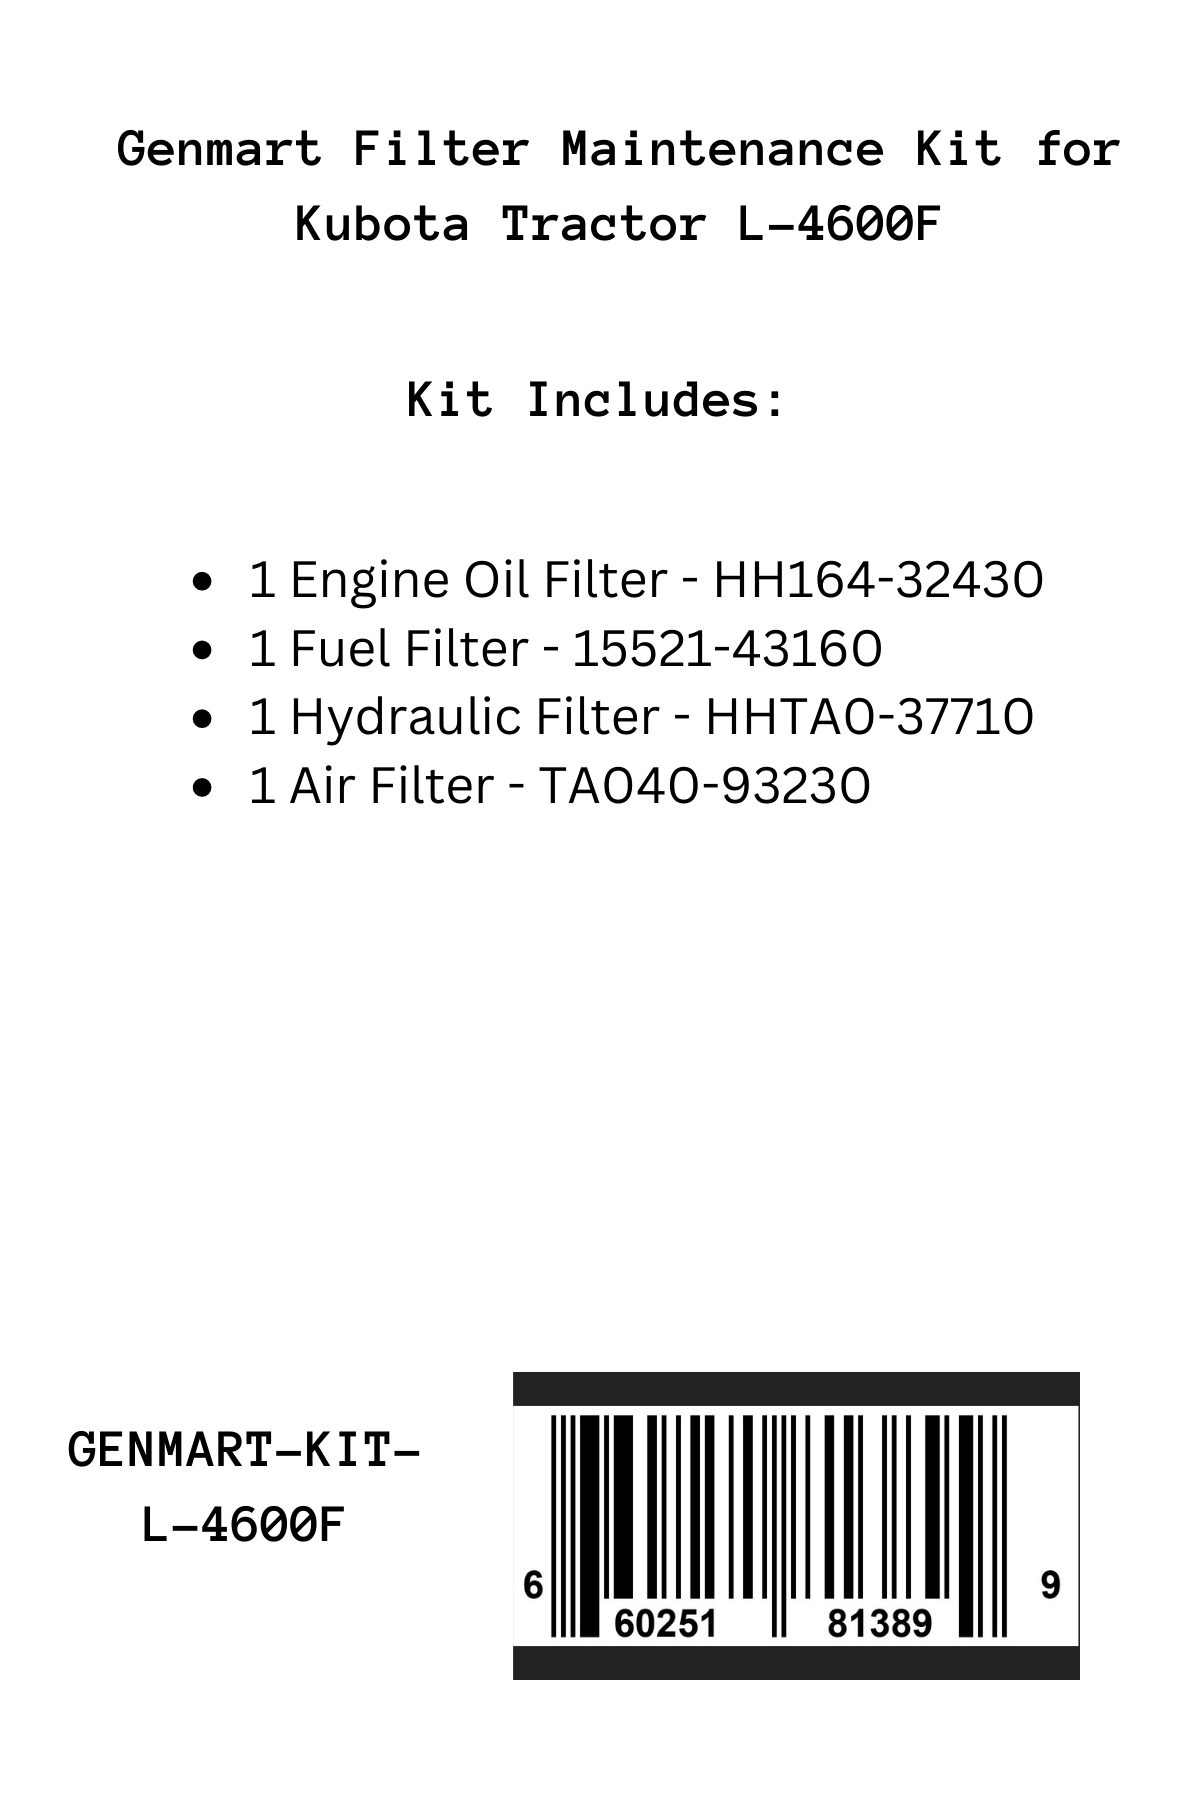 Genmart Filter Maintenance Kit for Kubota Tractor L-4600